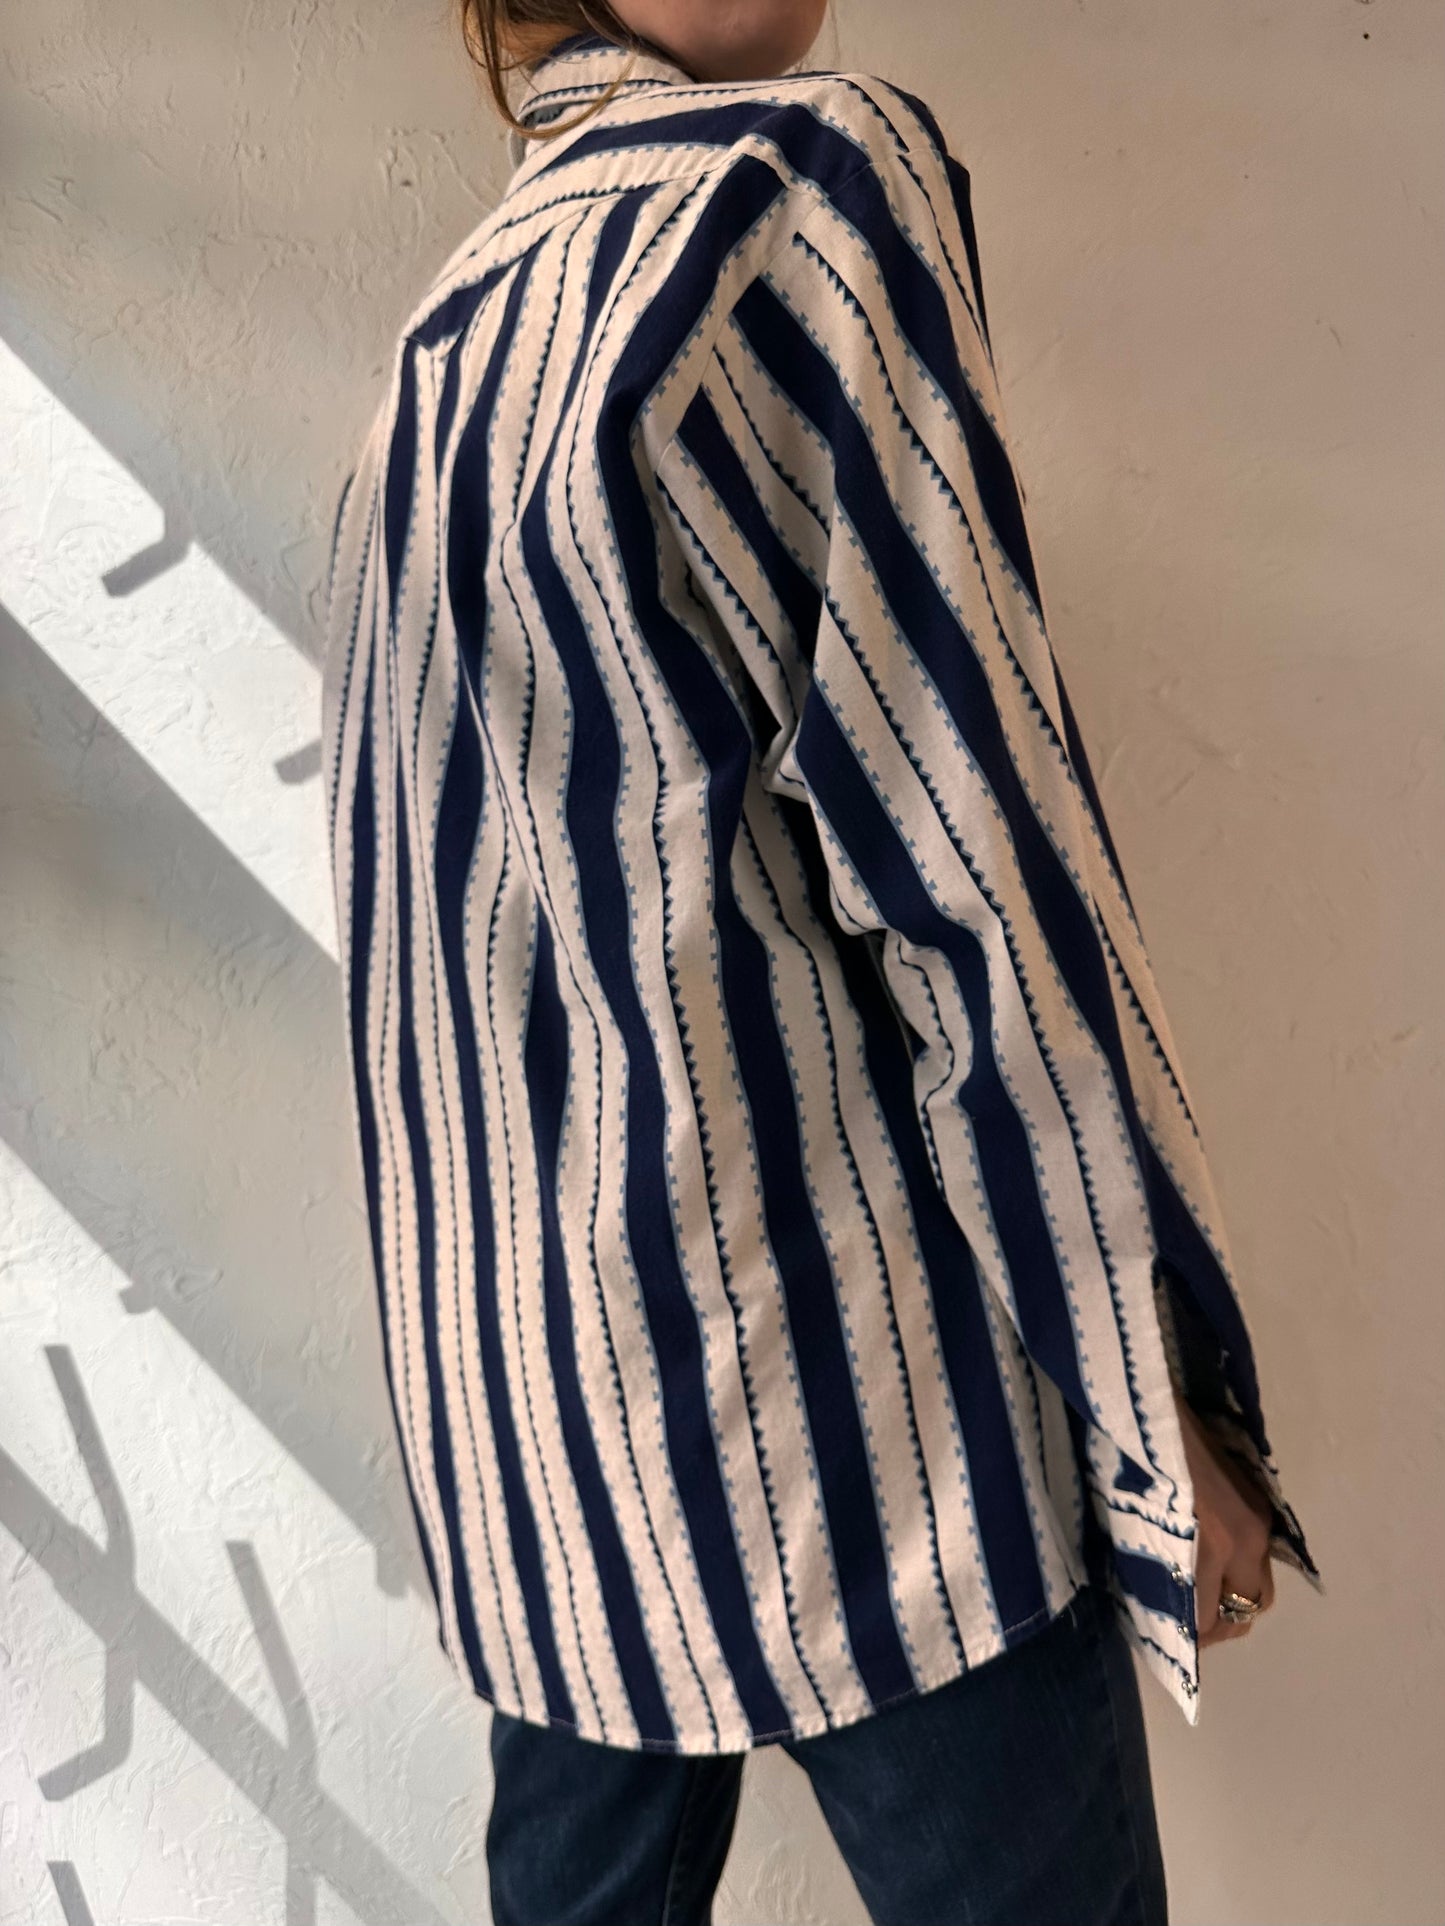 Vintage 'Panhandle Slim' Striped Western Pearl Snap Shirt / Large